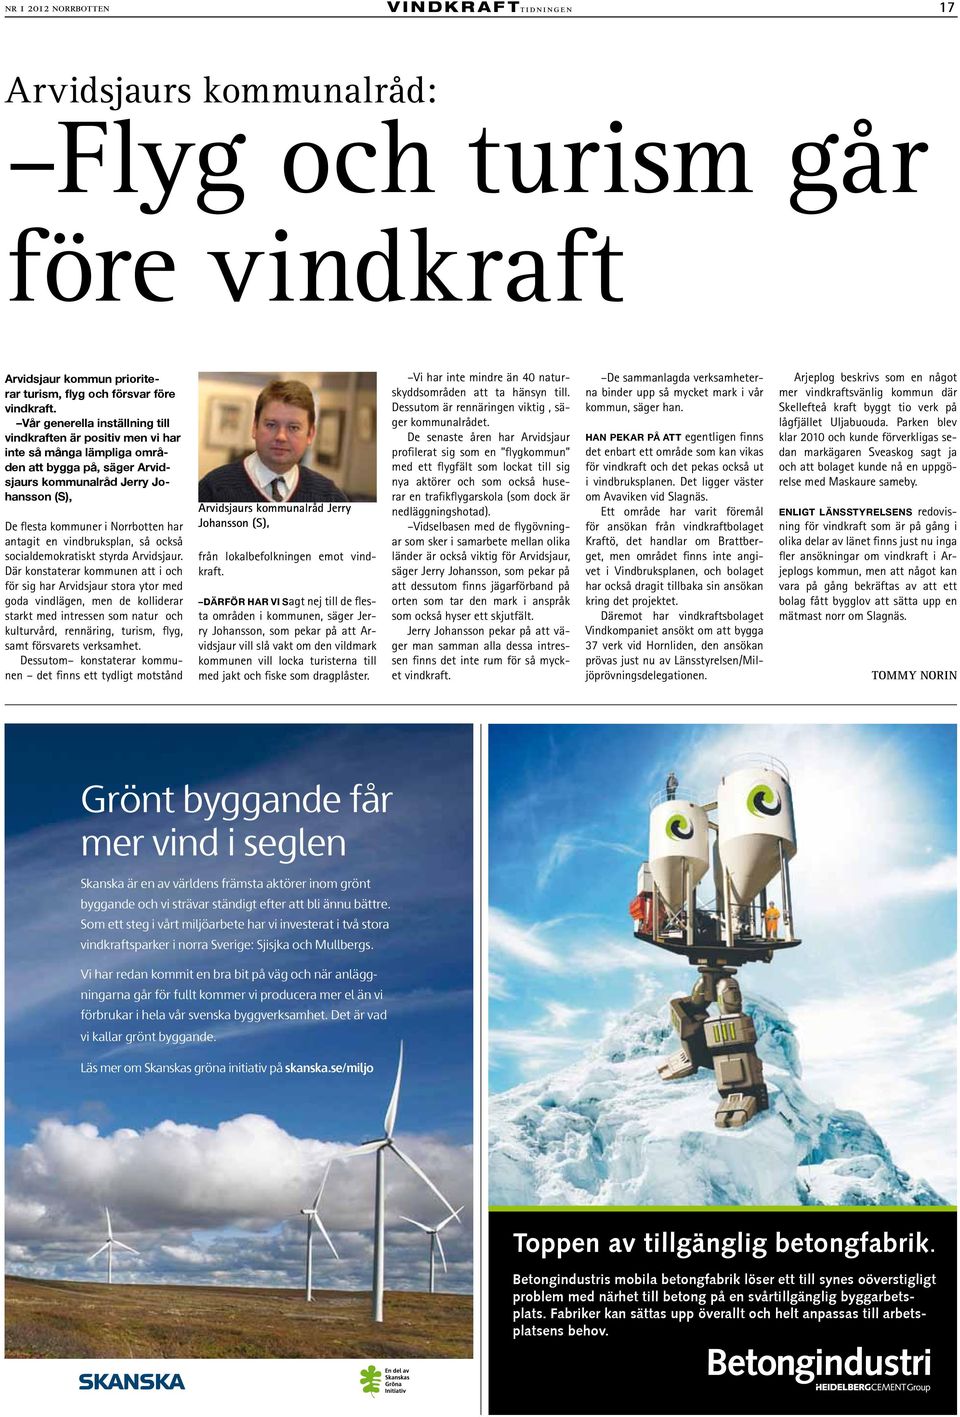 Vår generella inställning till vindkraften är positiv men vi har inte så många lämpliga områden att bygga på, säger Arvidsjaurs kommunalråd Jerry Johansson (S), De flesta kommuner i Norrbotten har